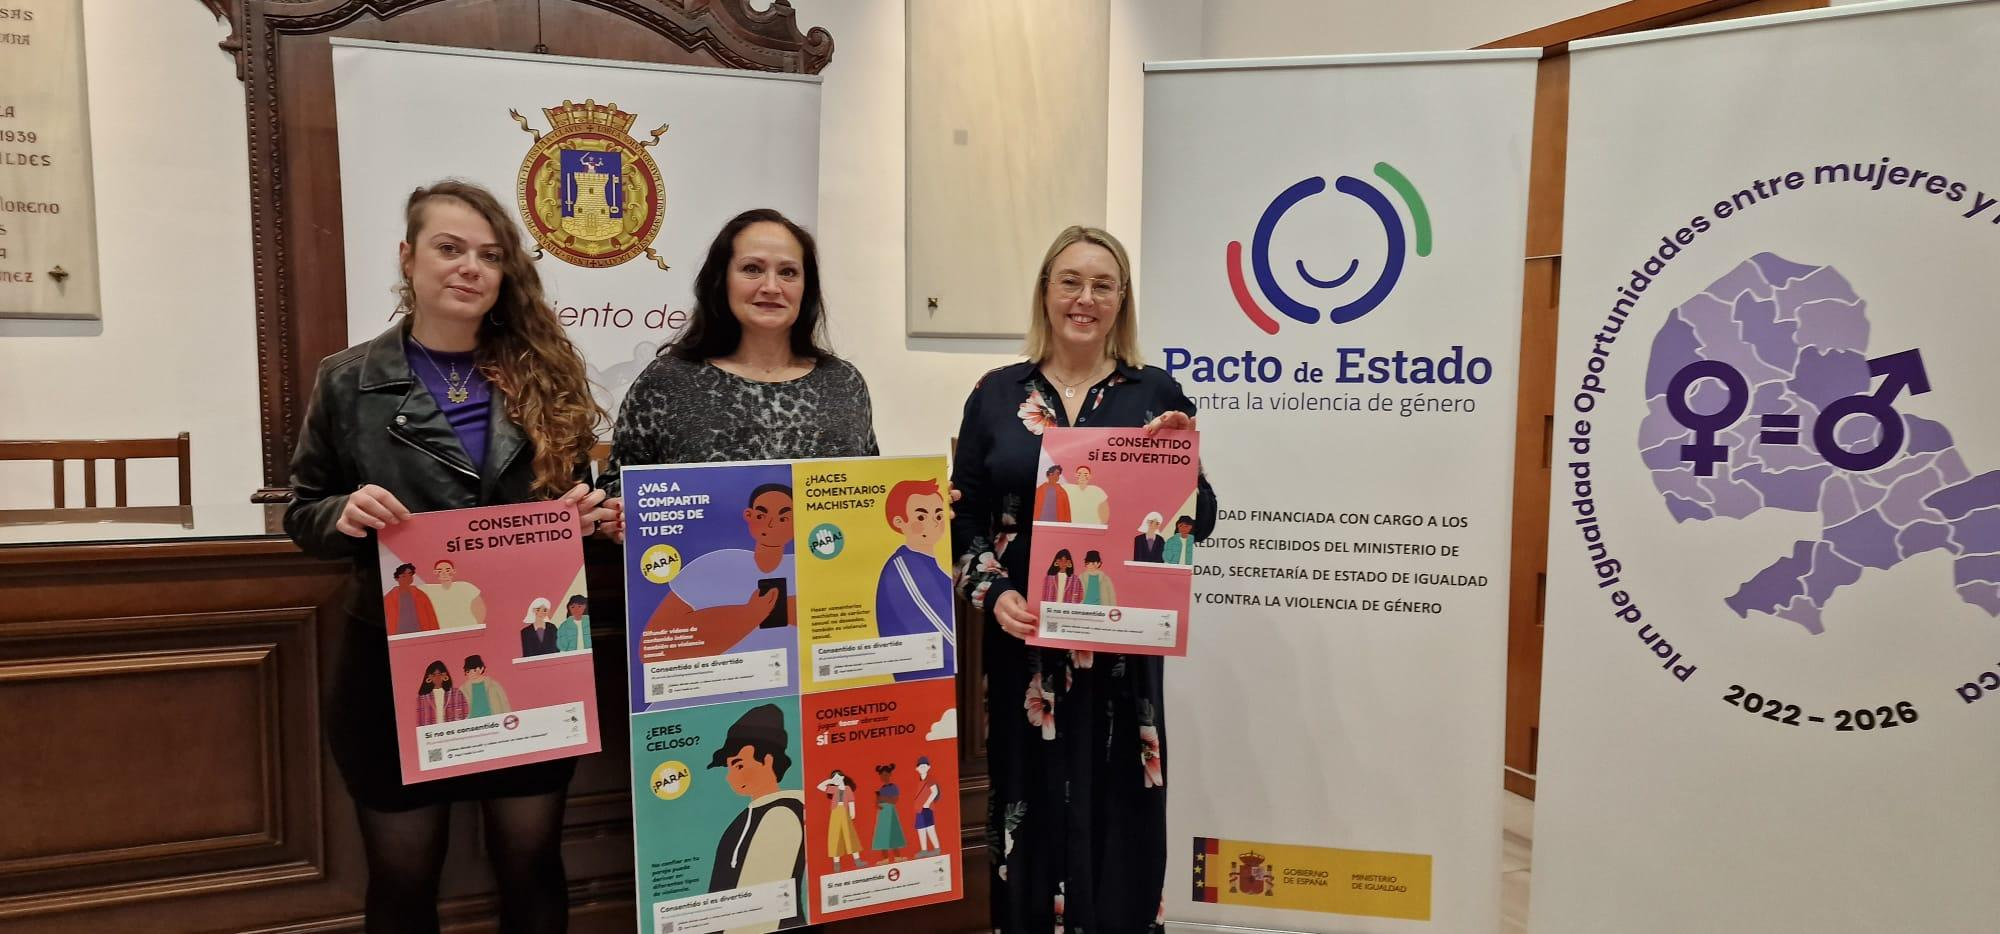 El Ayuntamiento de Lorca “se implica” en la sensibilización y prevención de las agresiones sexuales con la puesta en marcha de la campaña ‘Consentido sí es divertido’